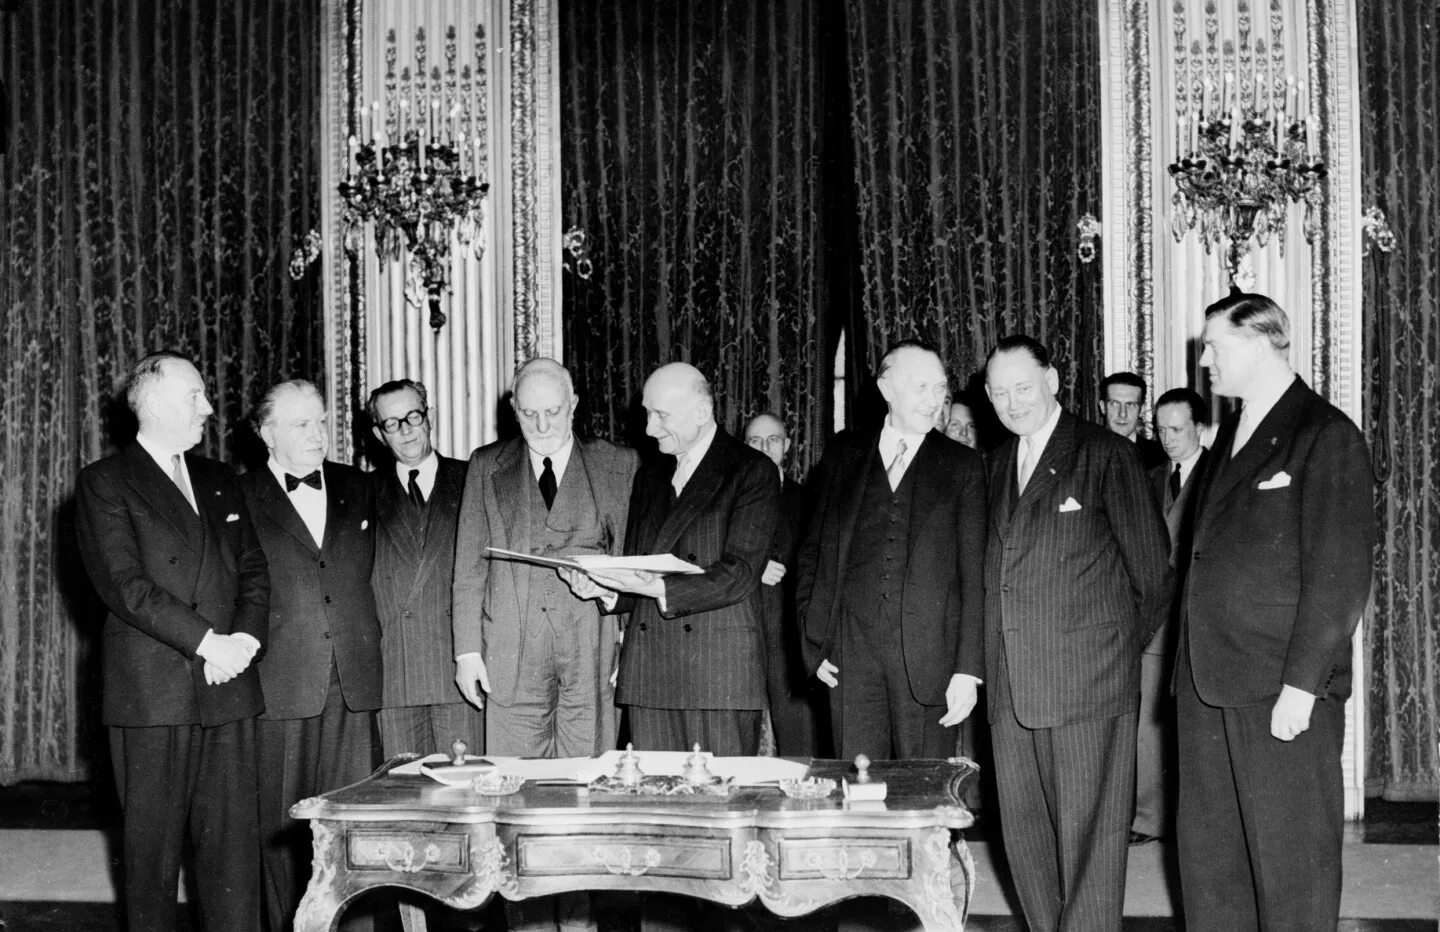 В каком году подписан договор про. ЕОУС 1951 год подписание. Парижский договор 1951. Европейское объединение угля и стали 1951. Европейское объединение угля и стали ЕОУС.